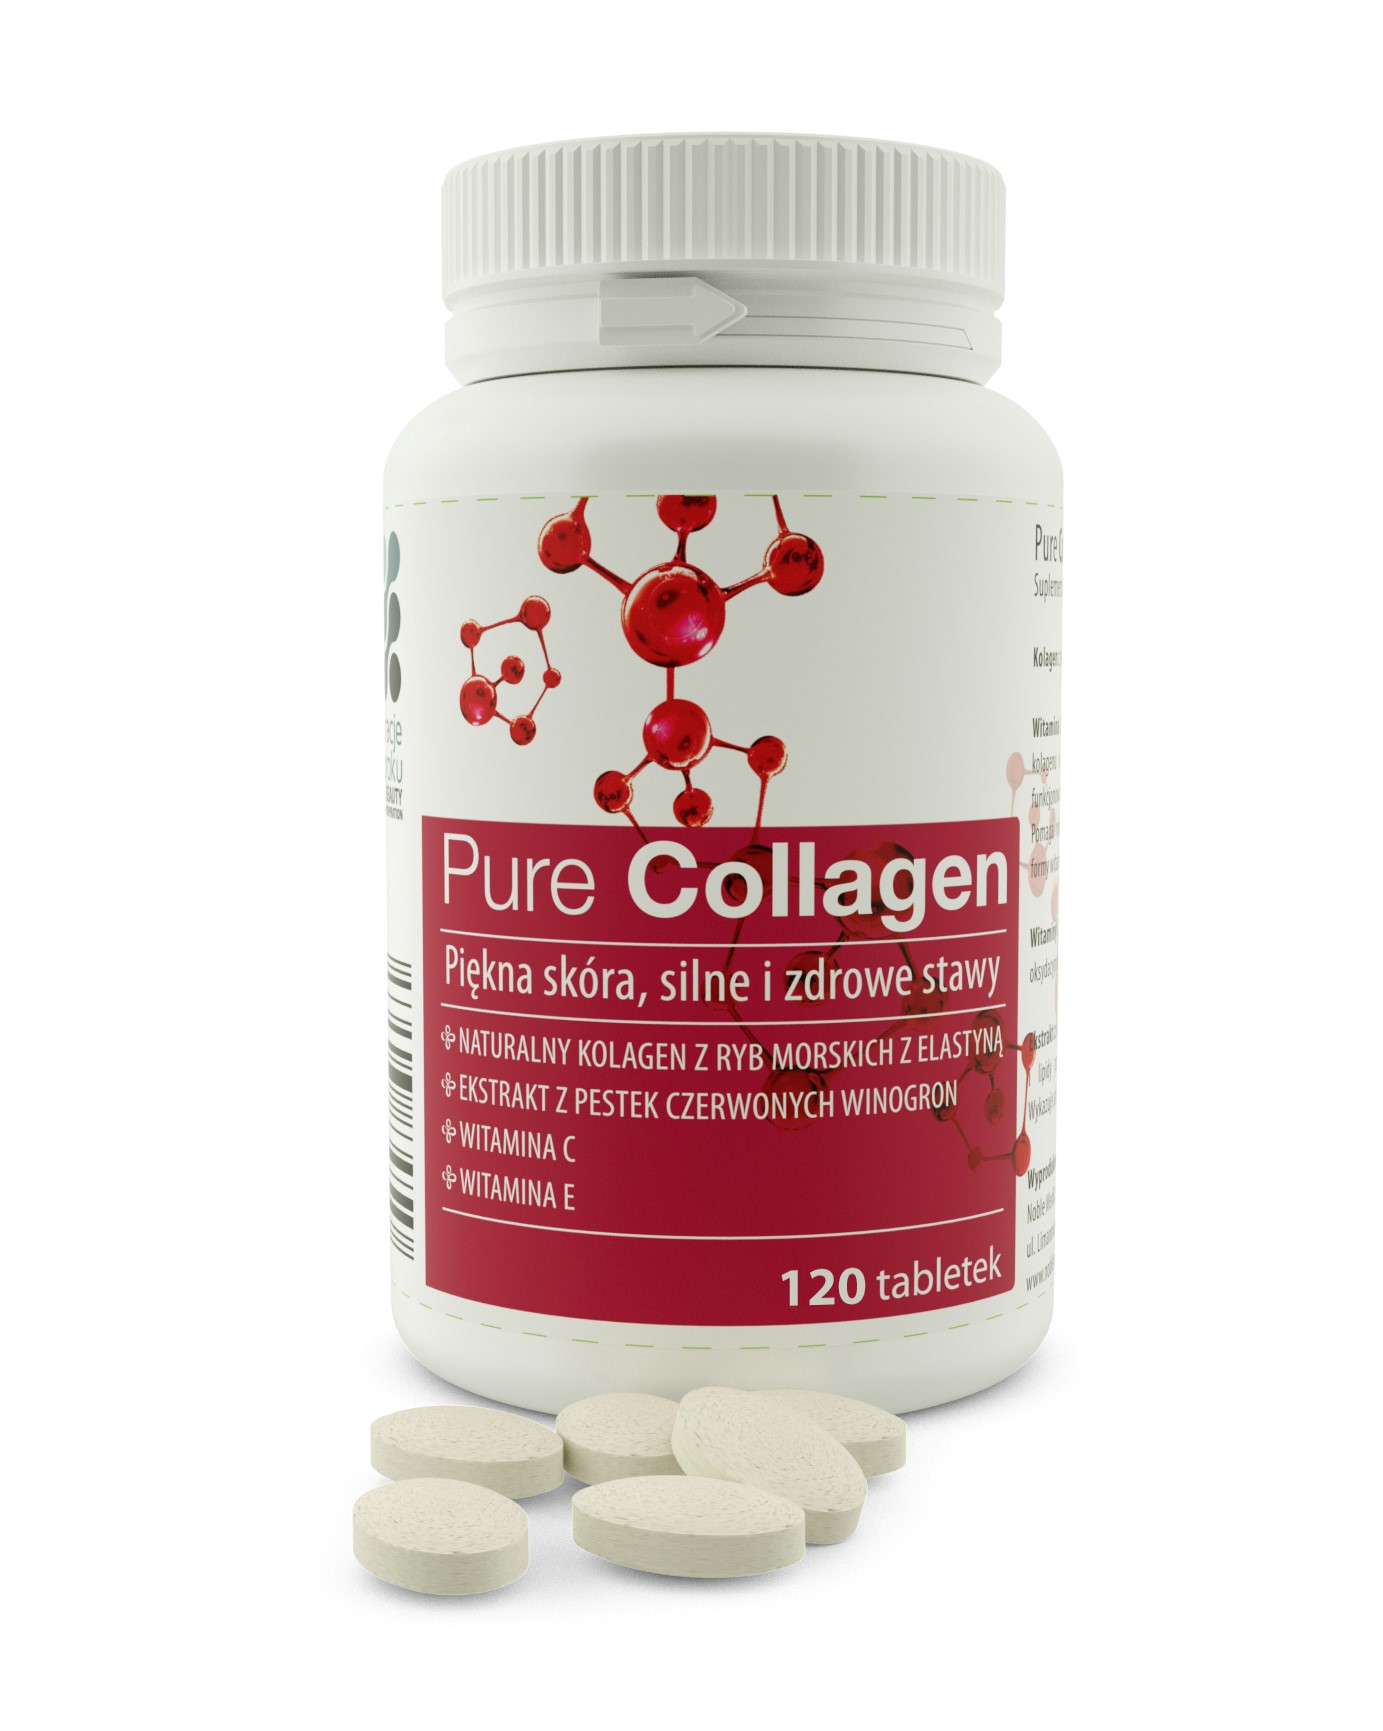 Testujemy produkty z kolagenem: tabletki Pure Collagen